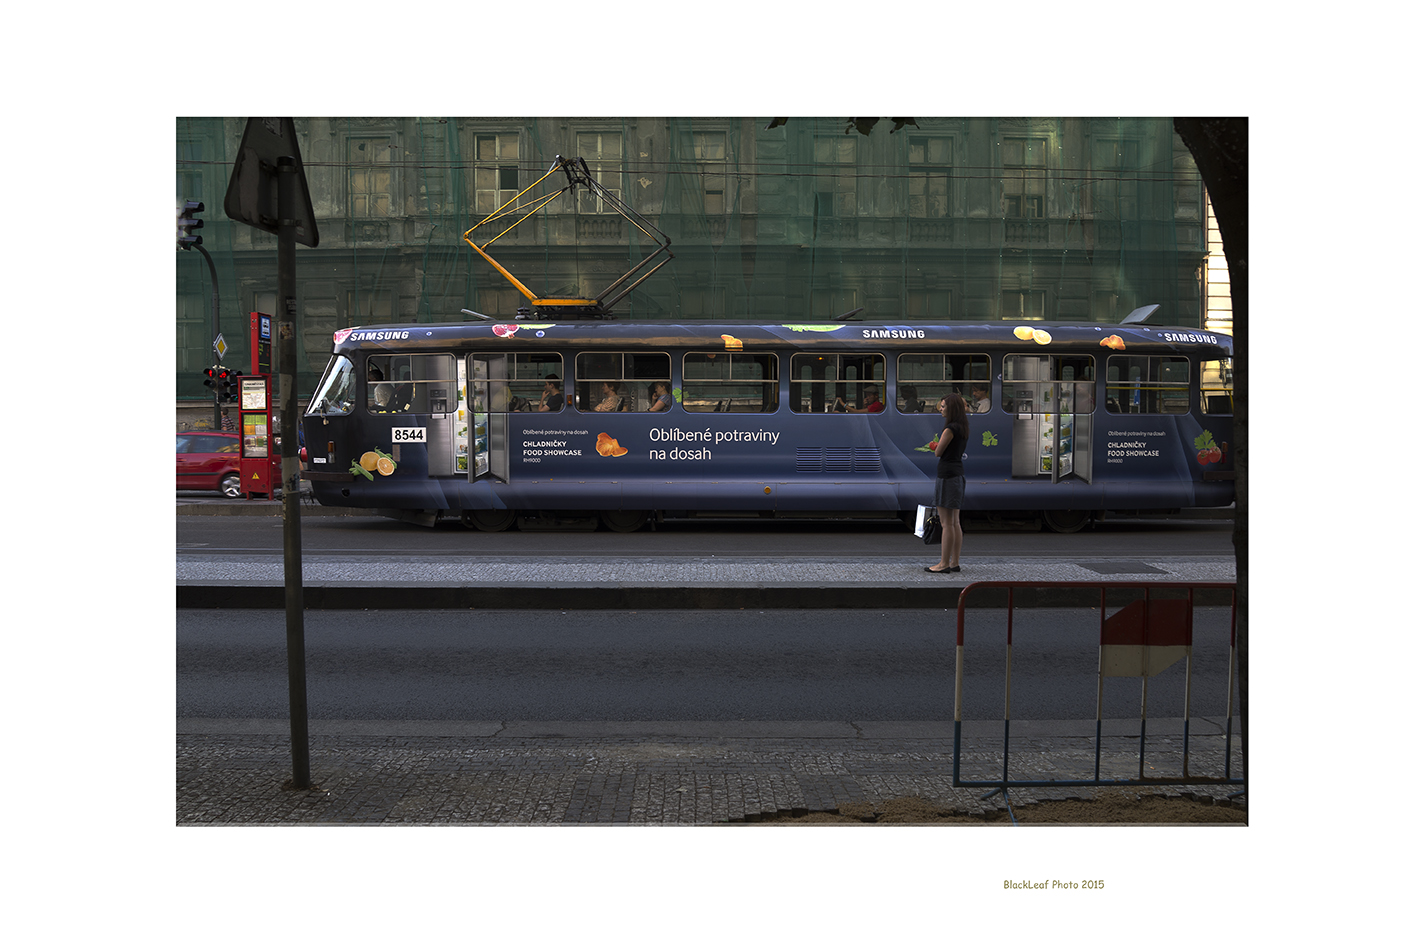 Tram Prague